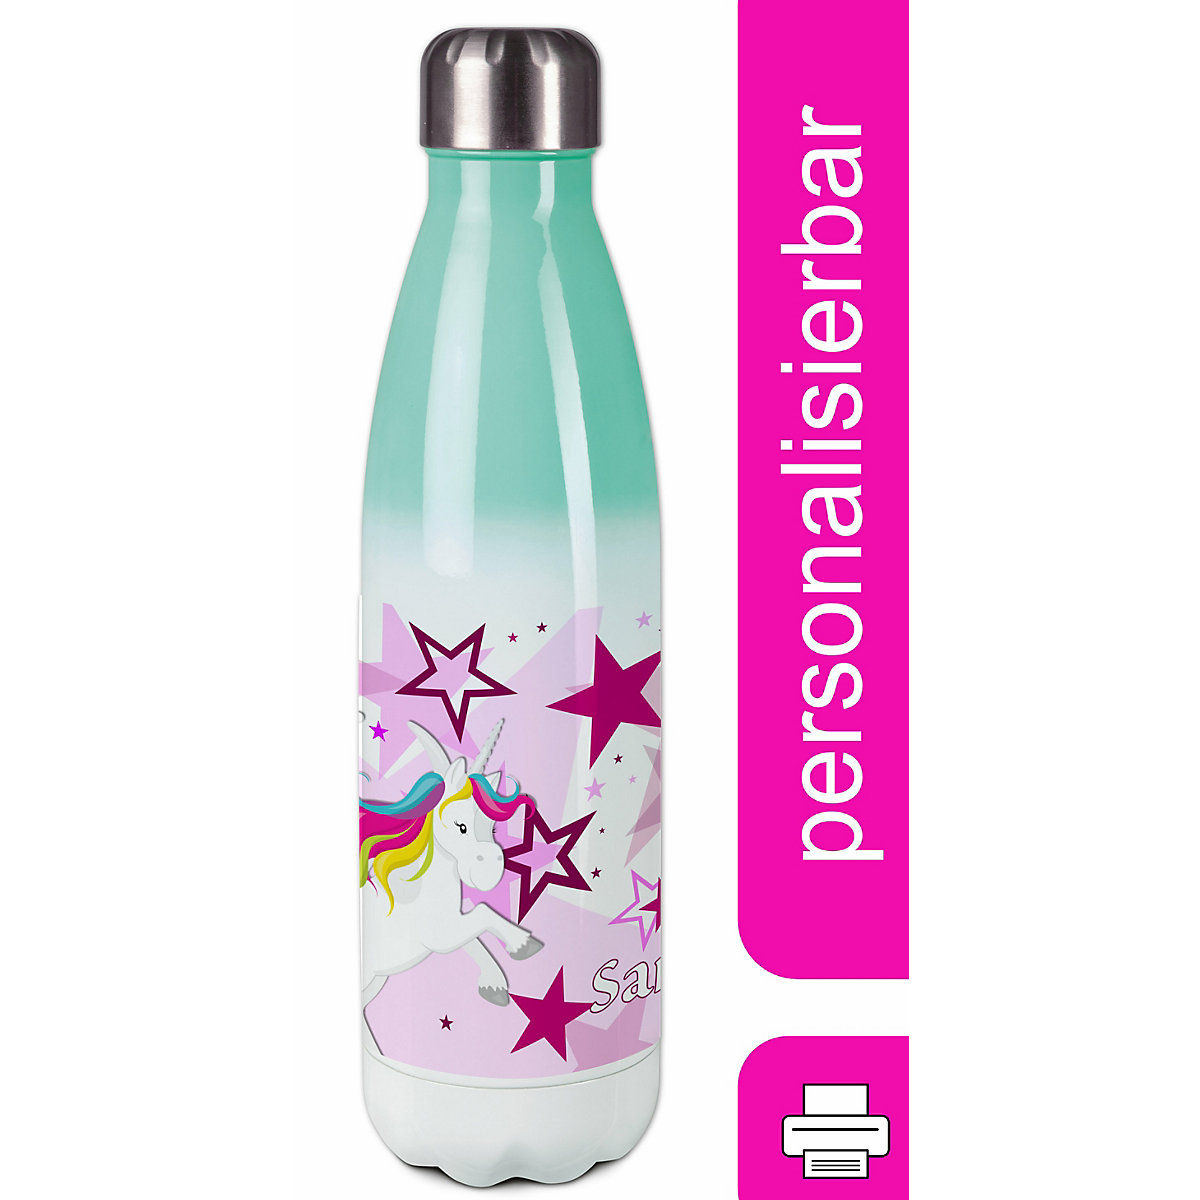 CreaDesign Edelstahl Kinder Thermoflasche / Trinkflasche bunt Pegasus Sterne Farbe rosa Spülmaschinenfest Auslaufsicher Bruchfest Doppelwandig Für Heißgetränke geeignet Mit Deckel Isoliert